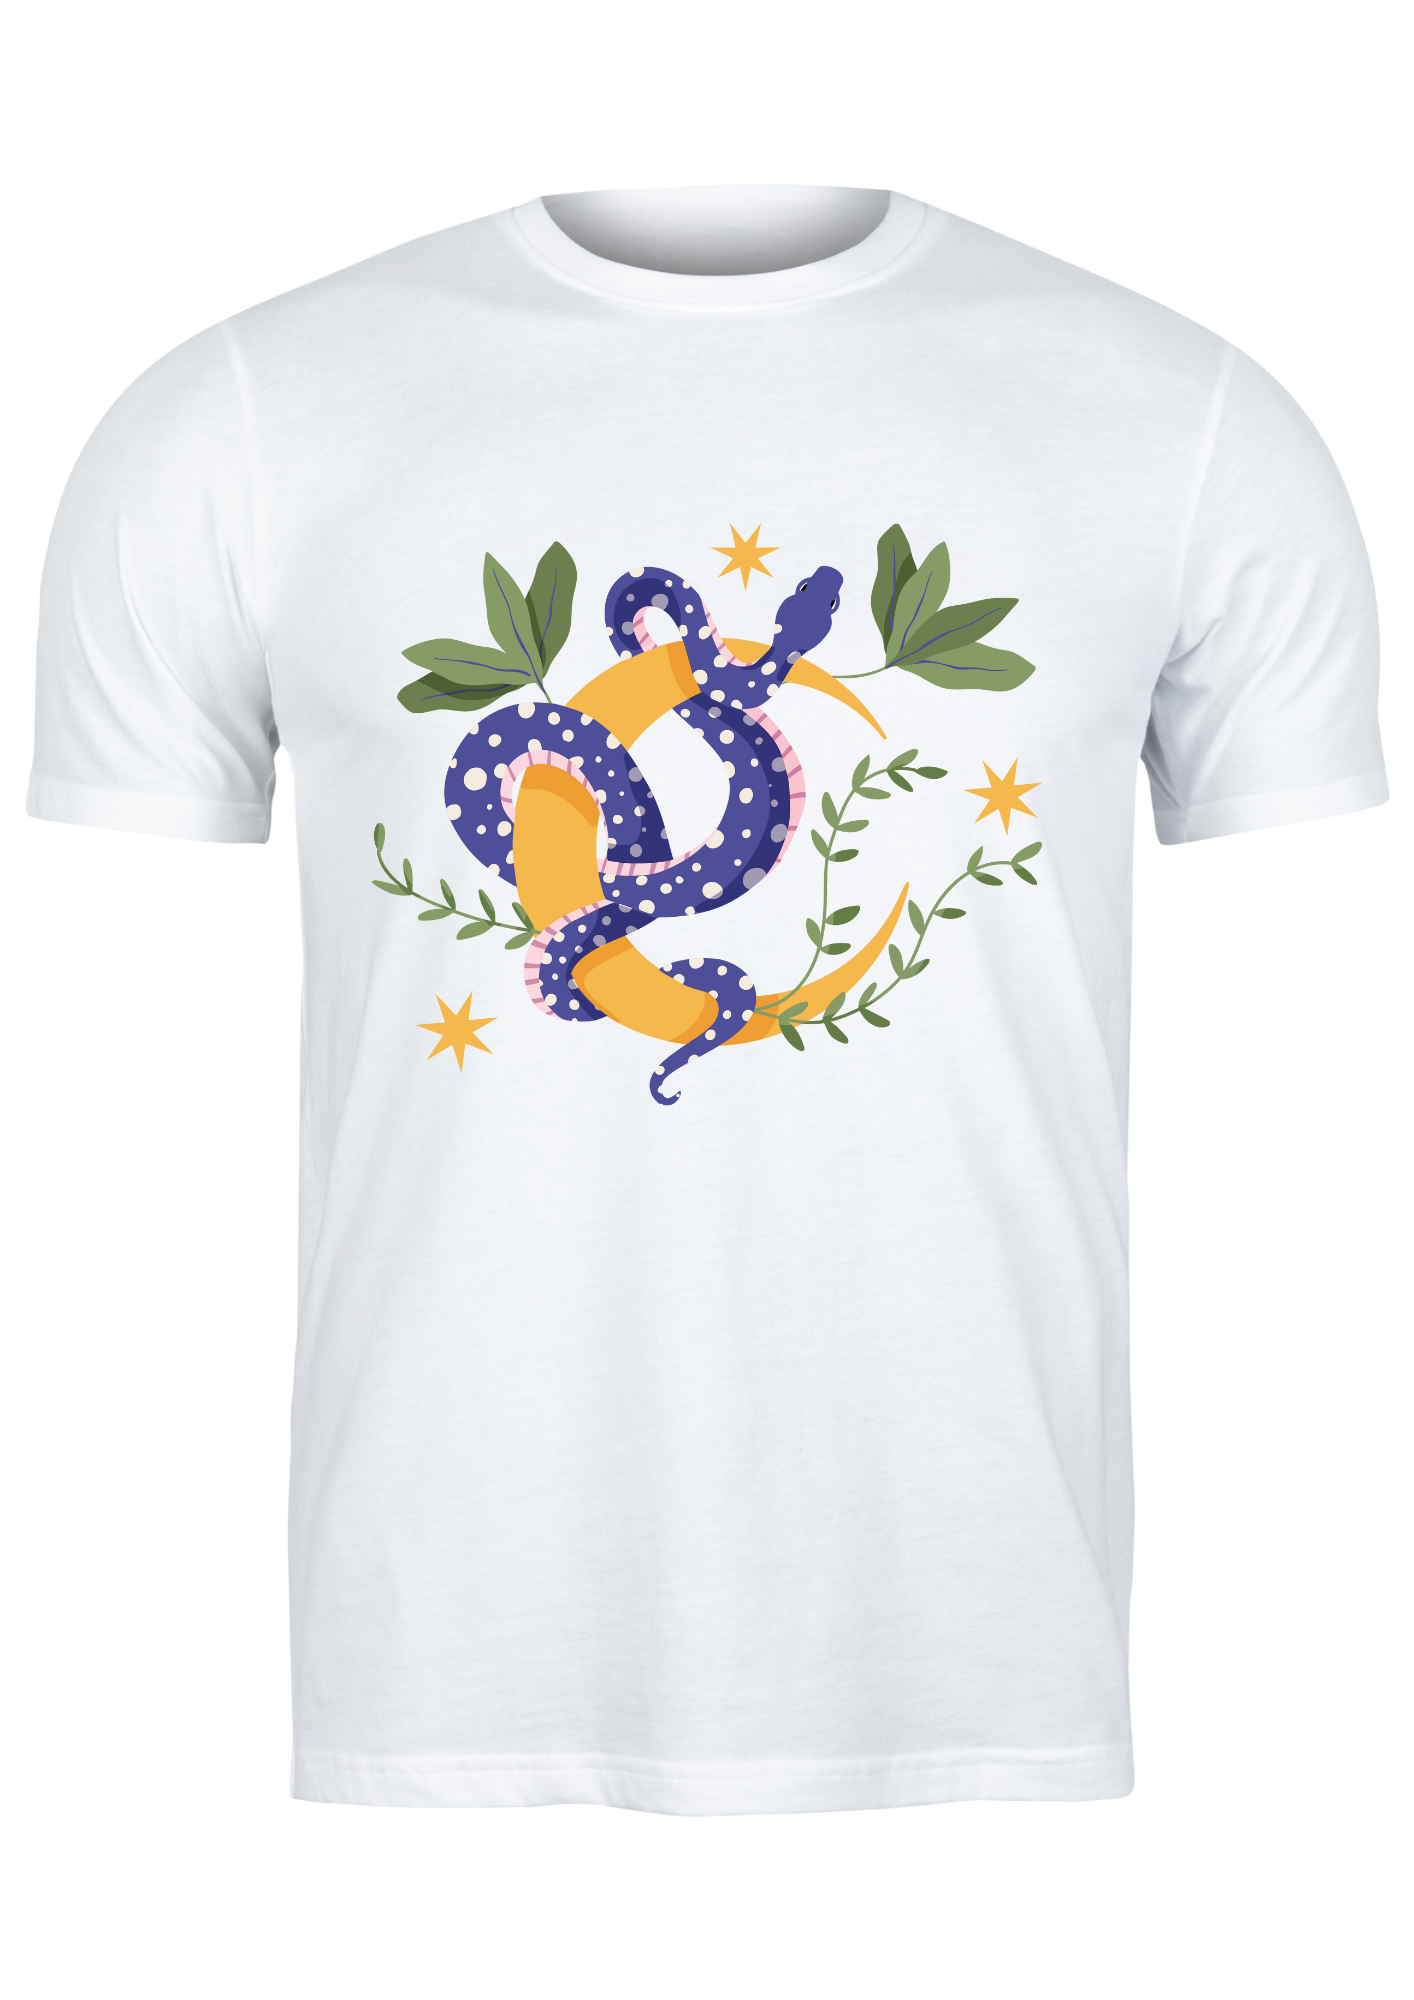 Unisex T Shirt Printed Celestial Moon Snake